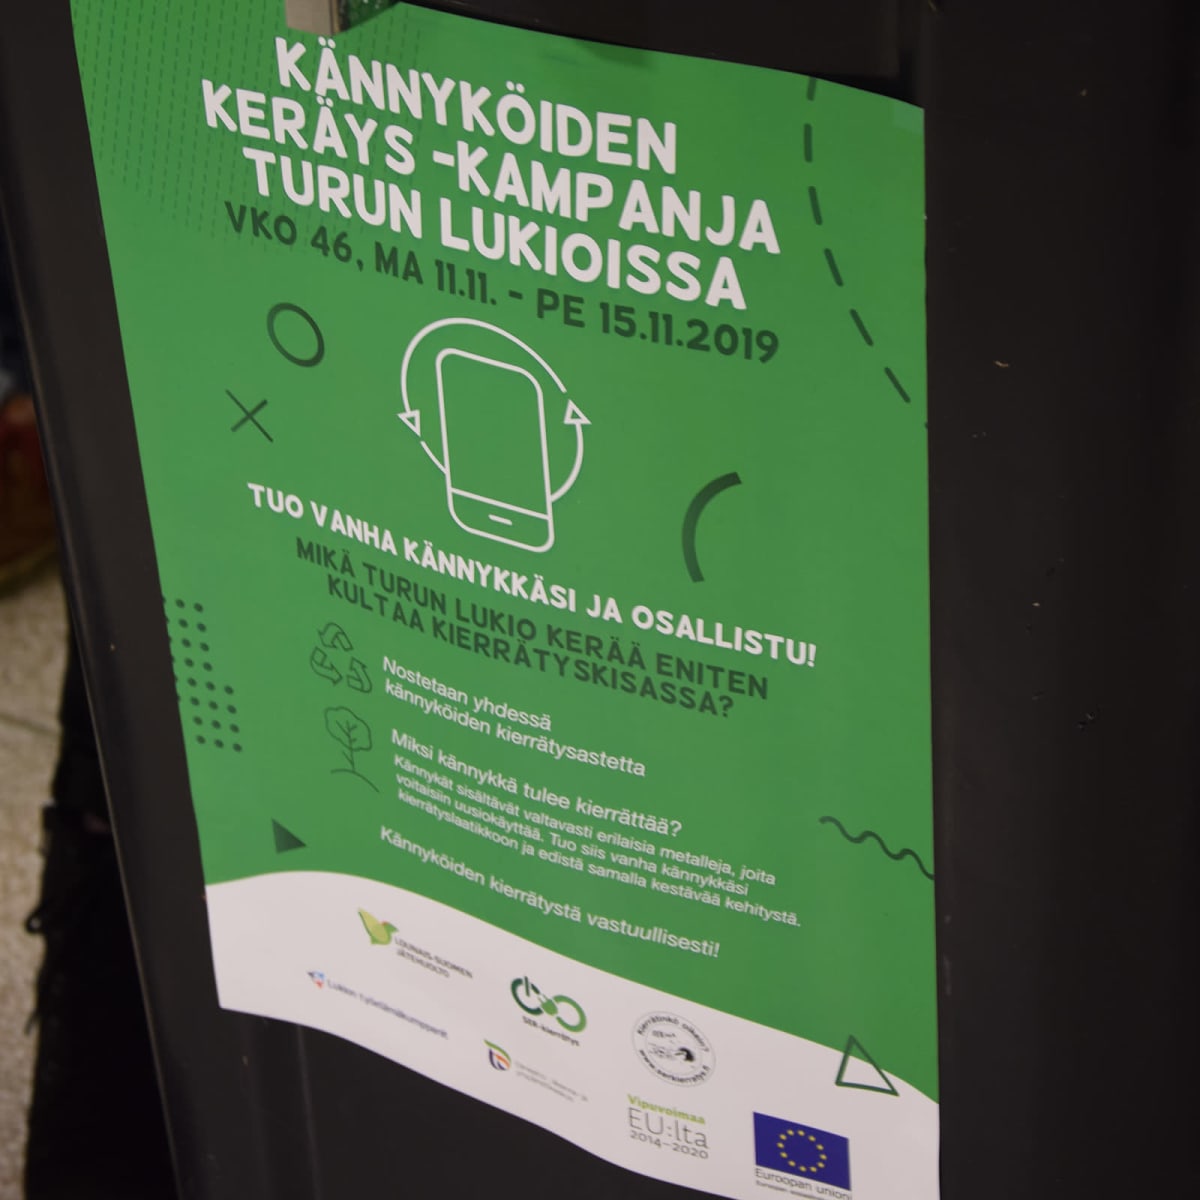 Turun lukioissa kierrätetään vanhoja matkapuhelimia.